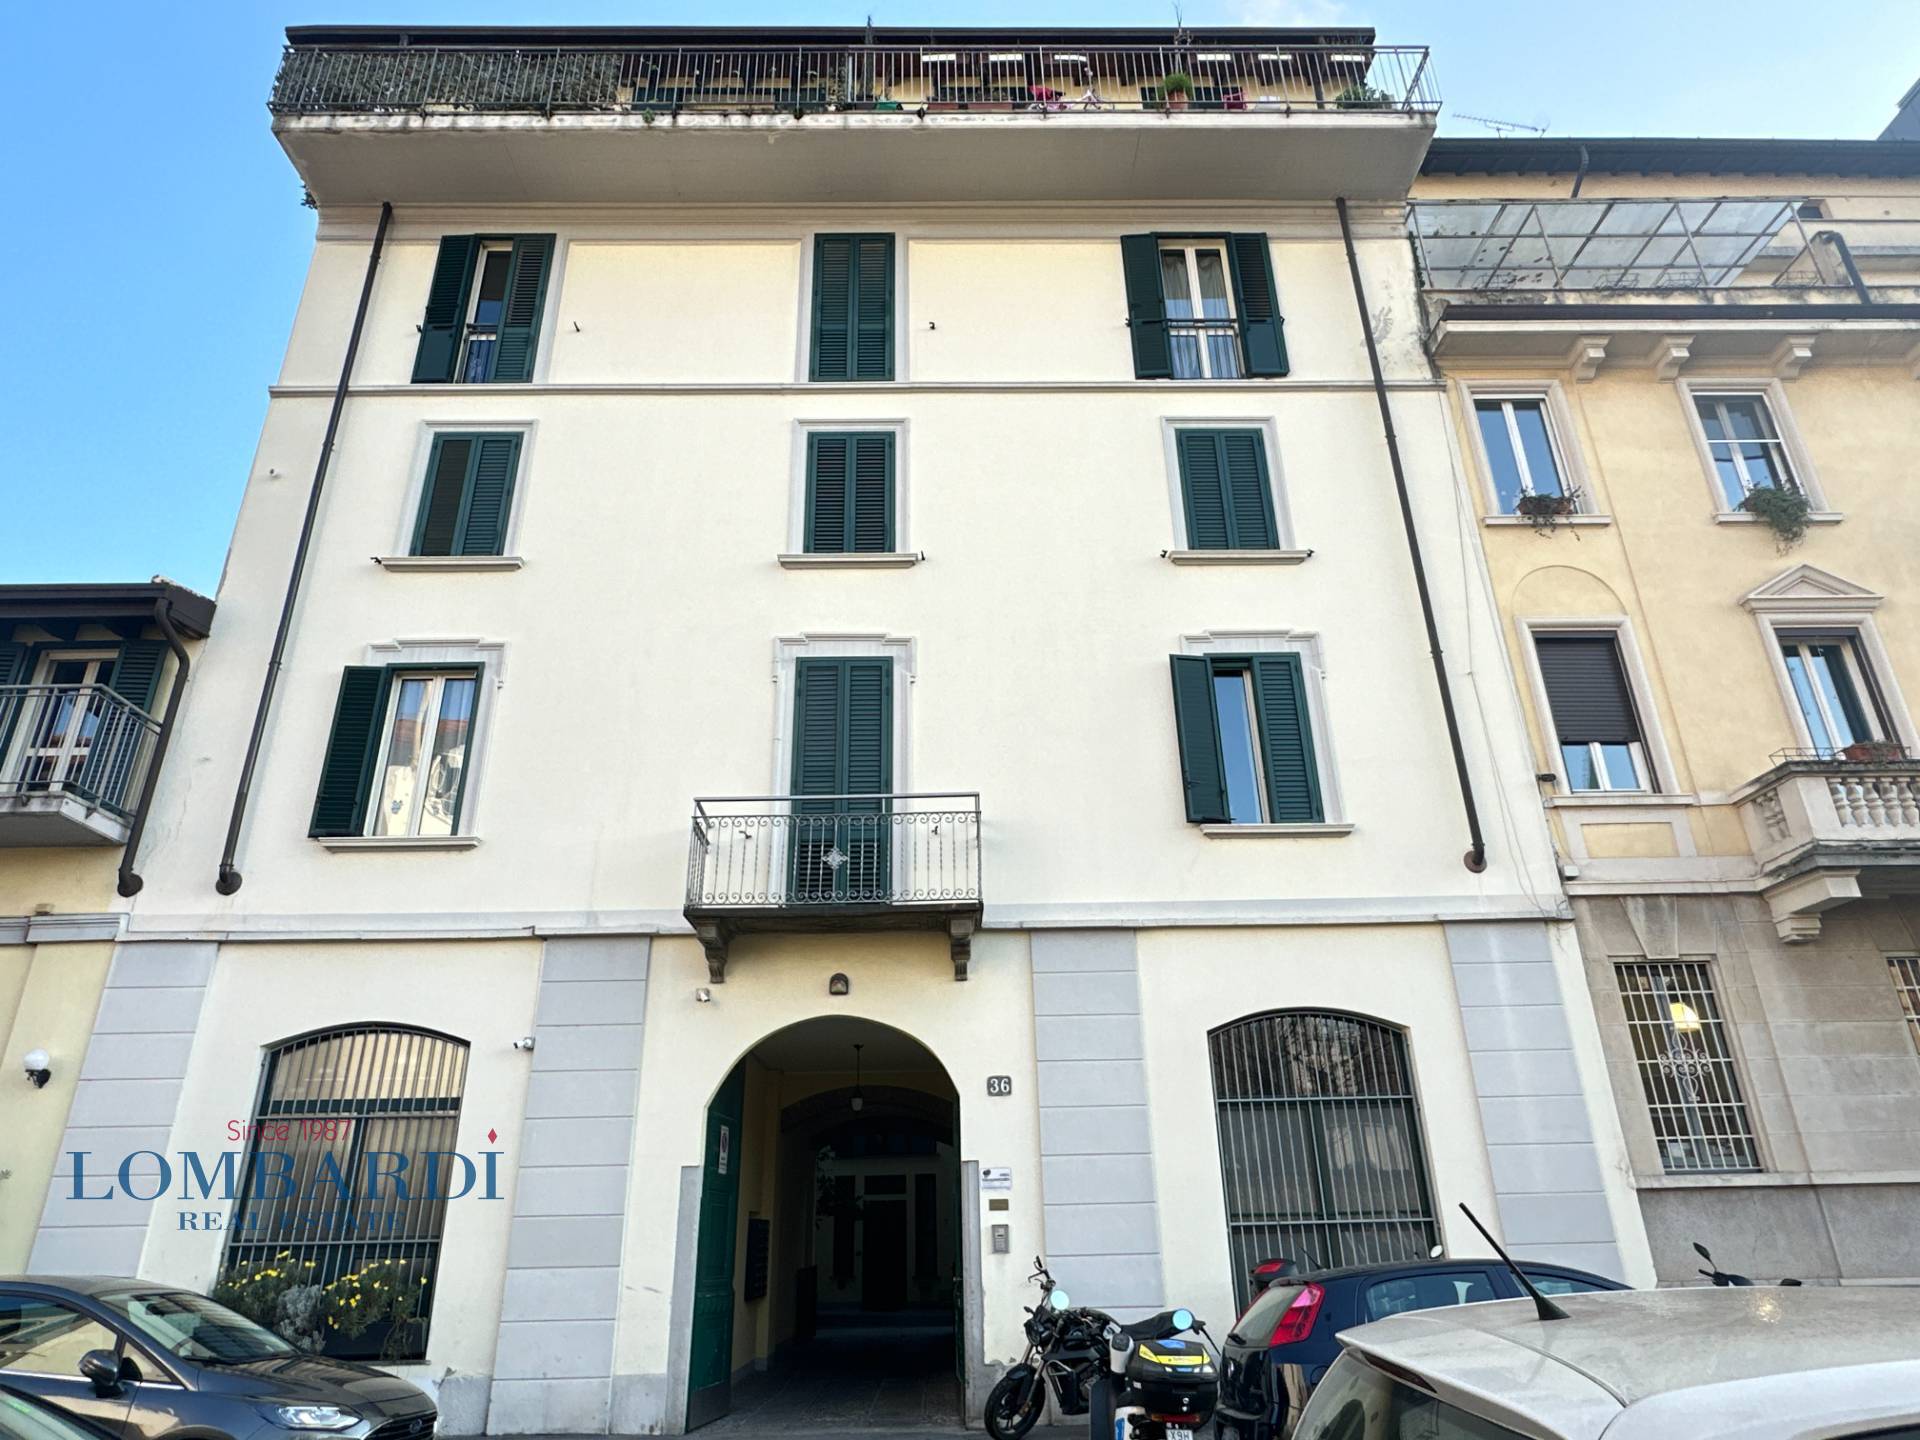 Affitto Loft Appartamento Milano 469571